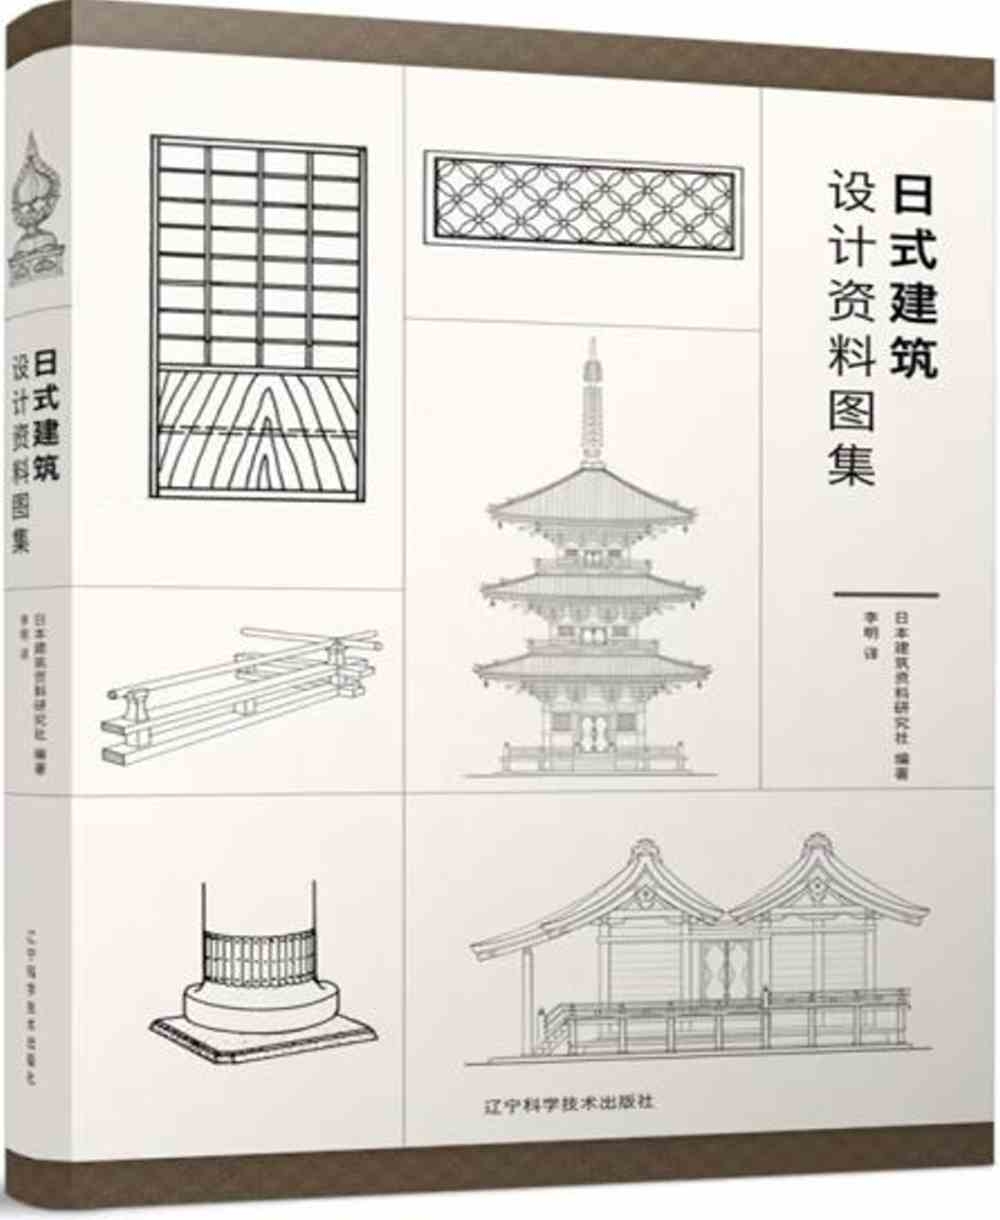 日式建築設計資料圖集